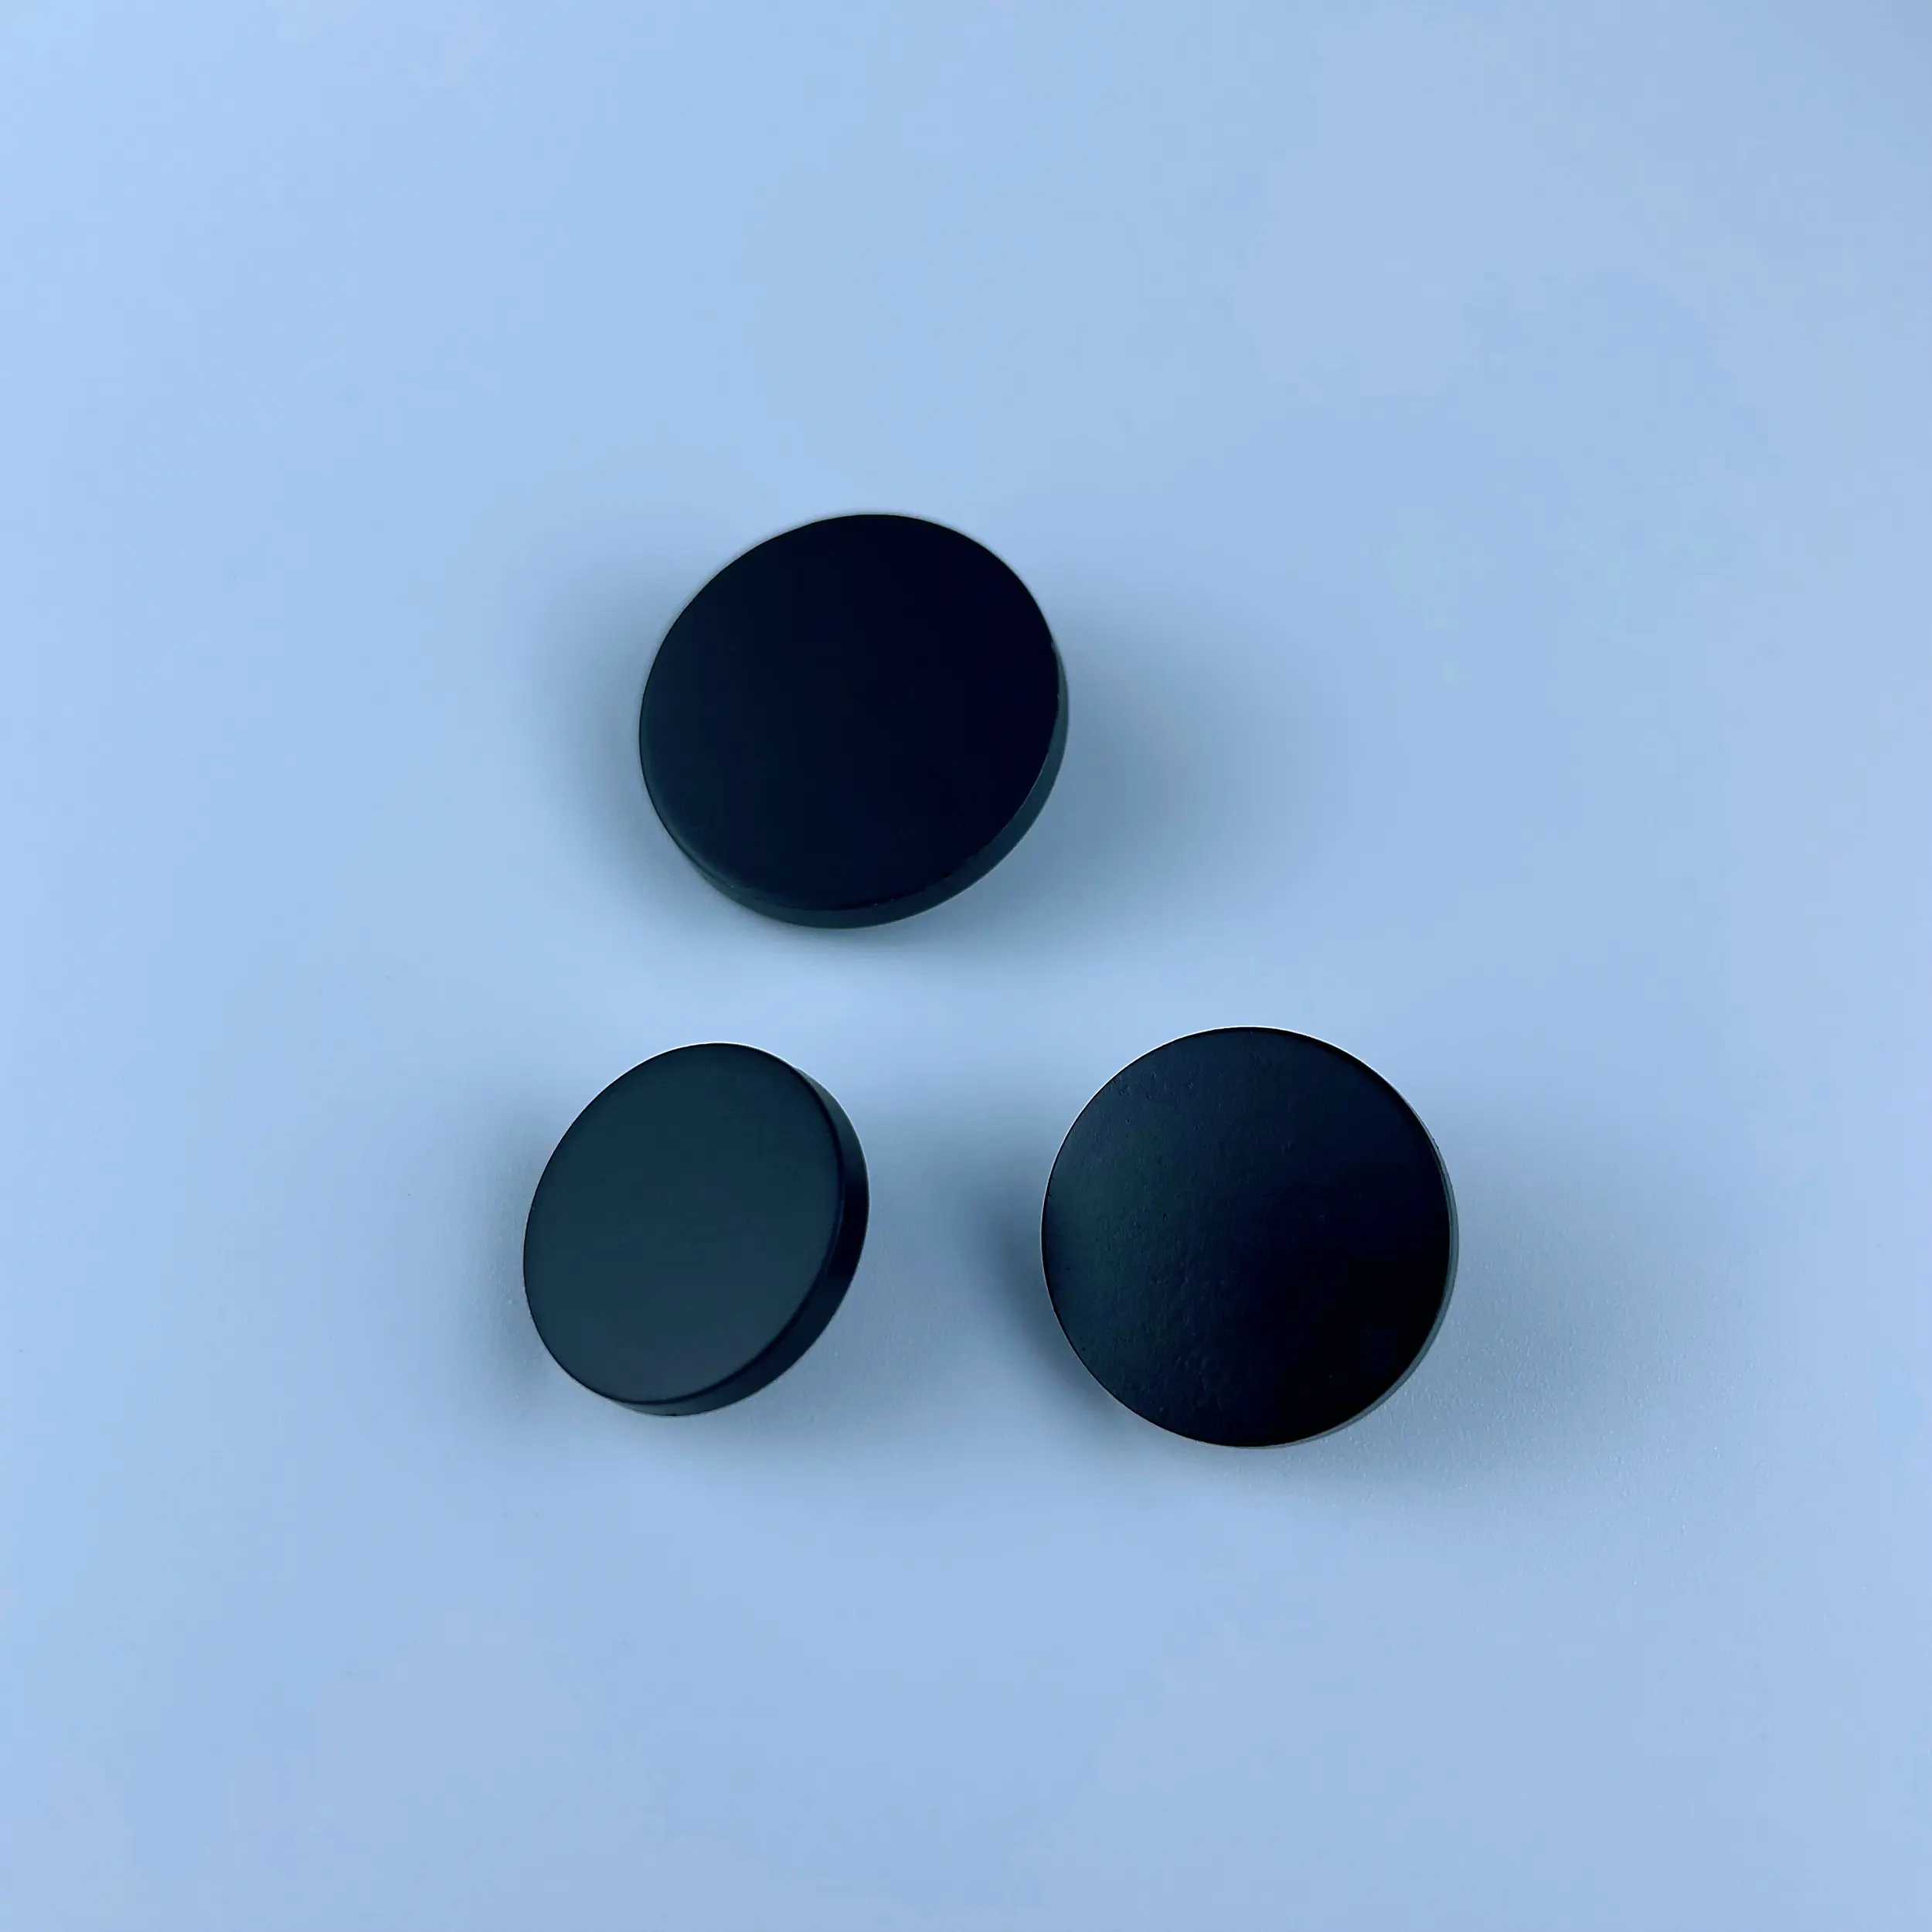 Raptiye 4 bölüm yapış düğmeler kaplama sap düz yüz Metal çinko alaşım yuvarlak Vt3 plastik yeni tasarım için özelleştirilmiş nikel-ücretsiz